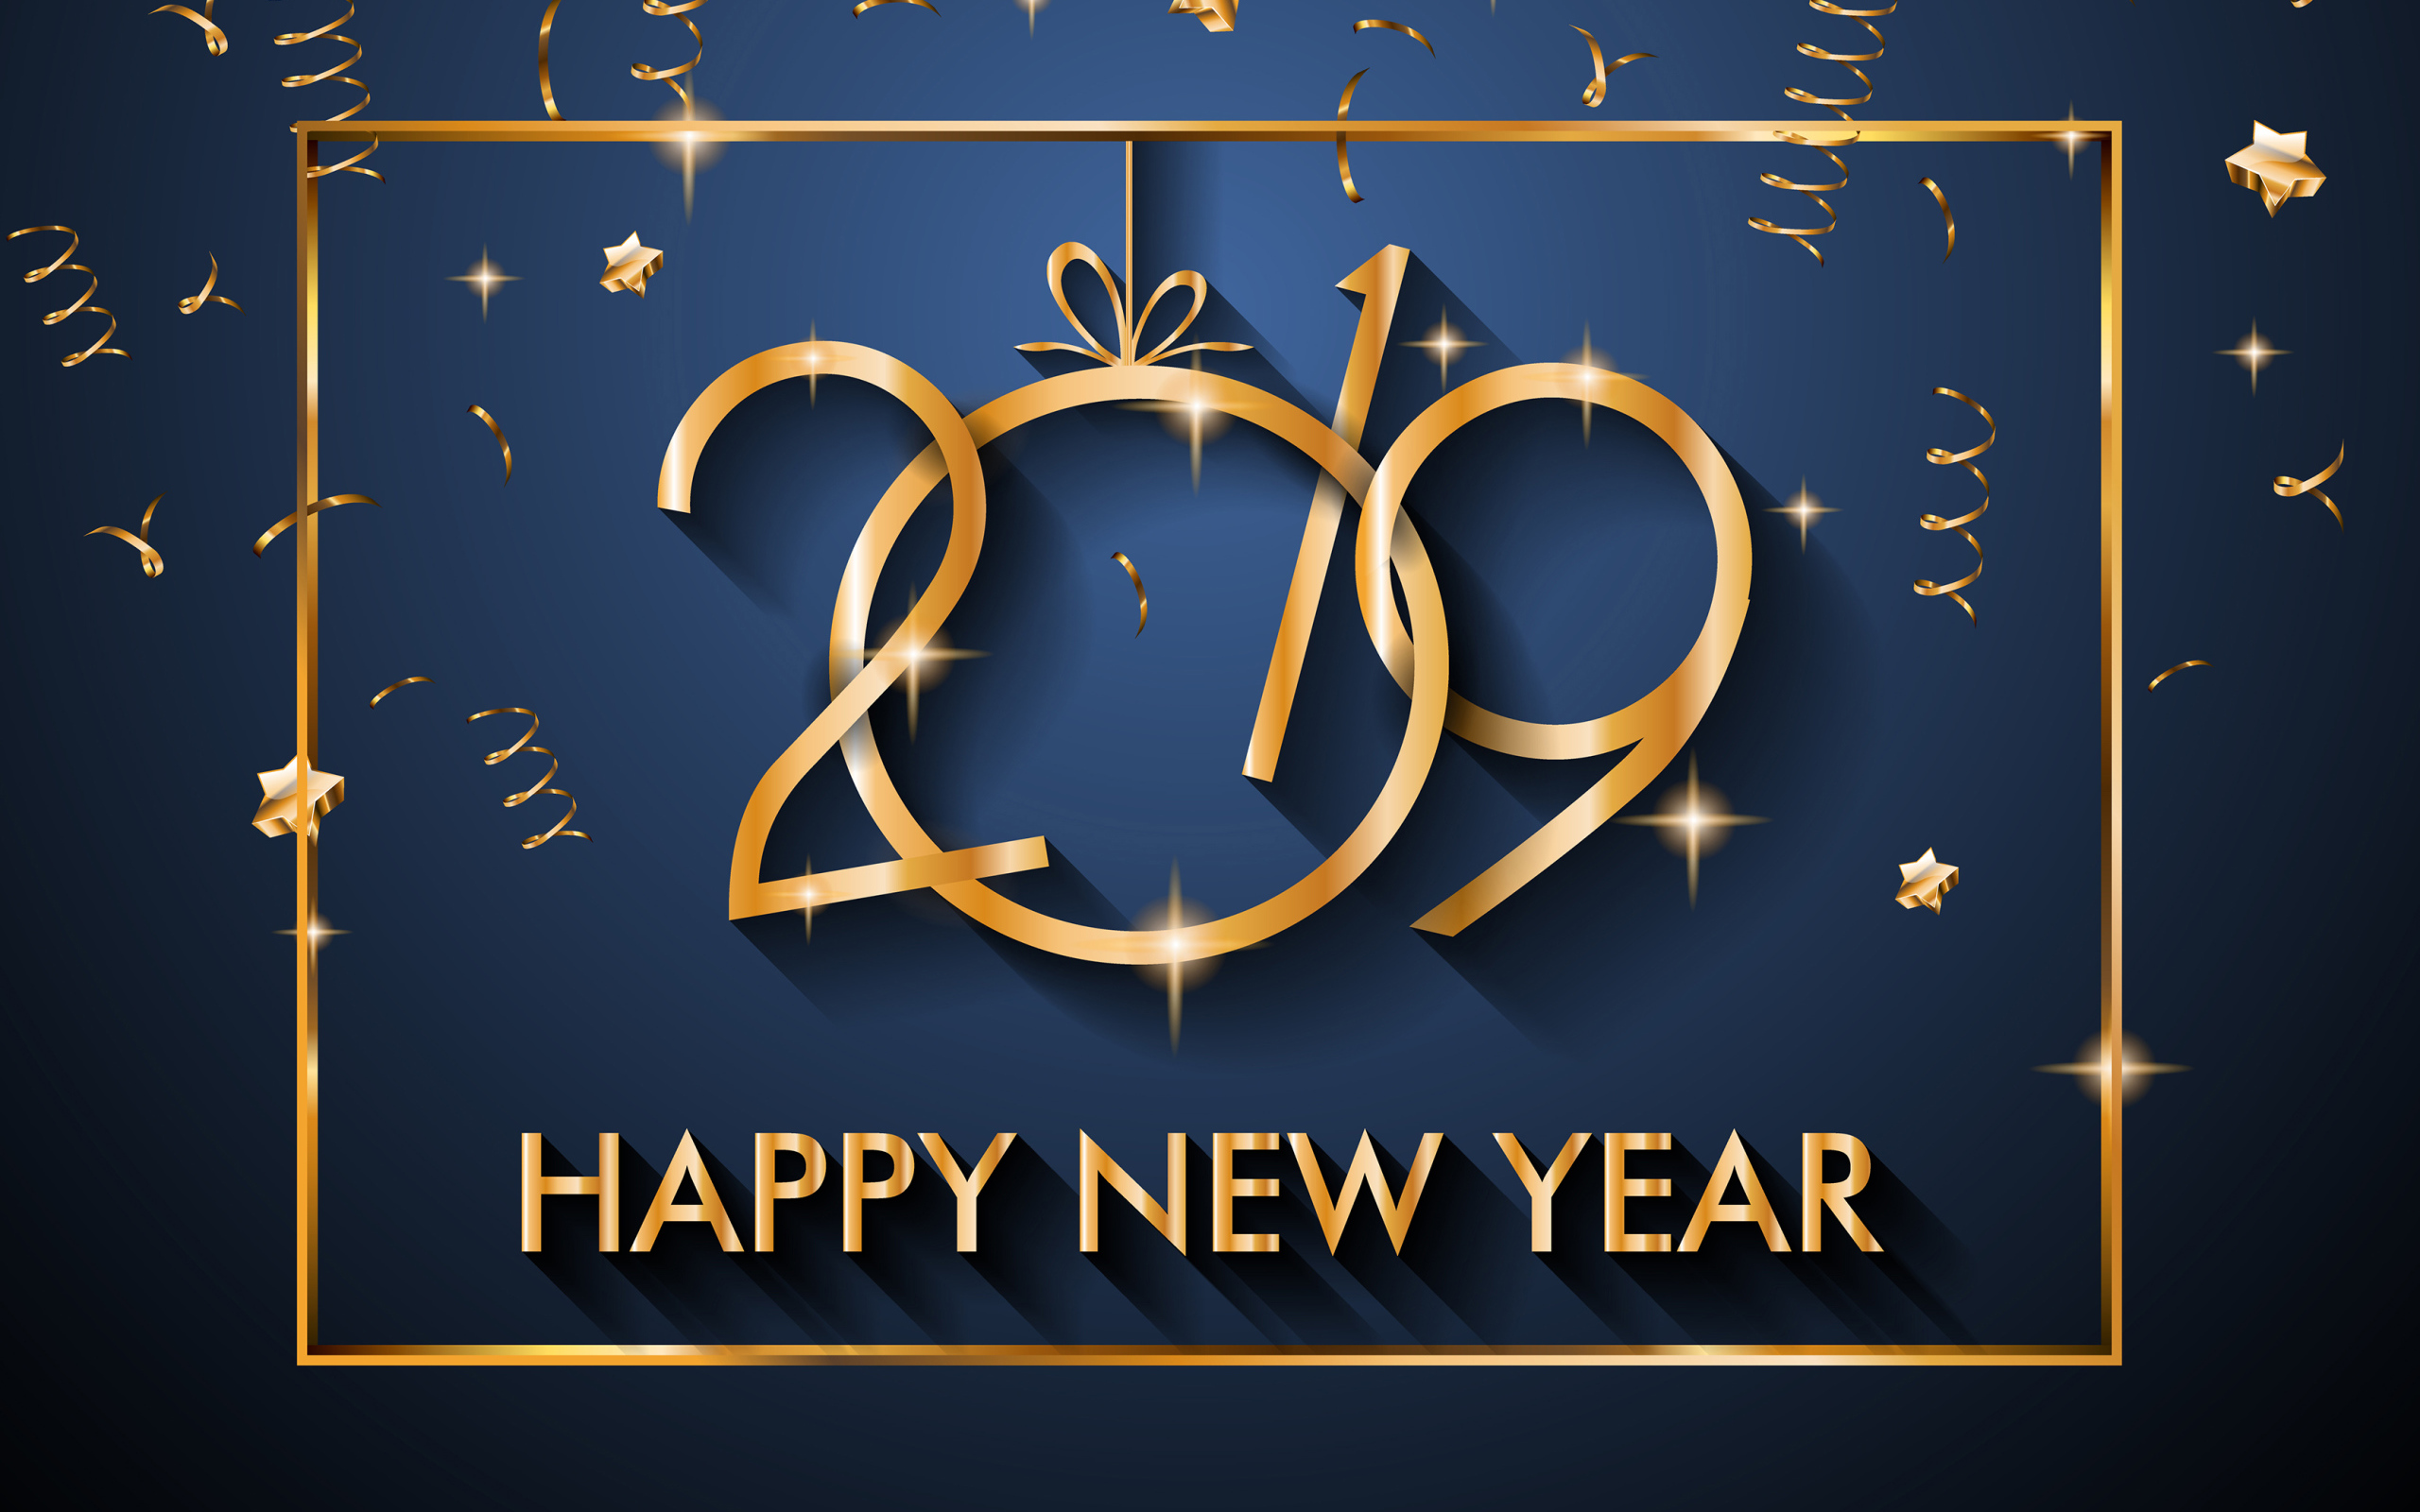 Счастливого нового года 2019 